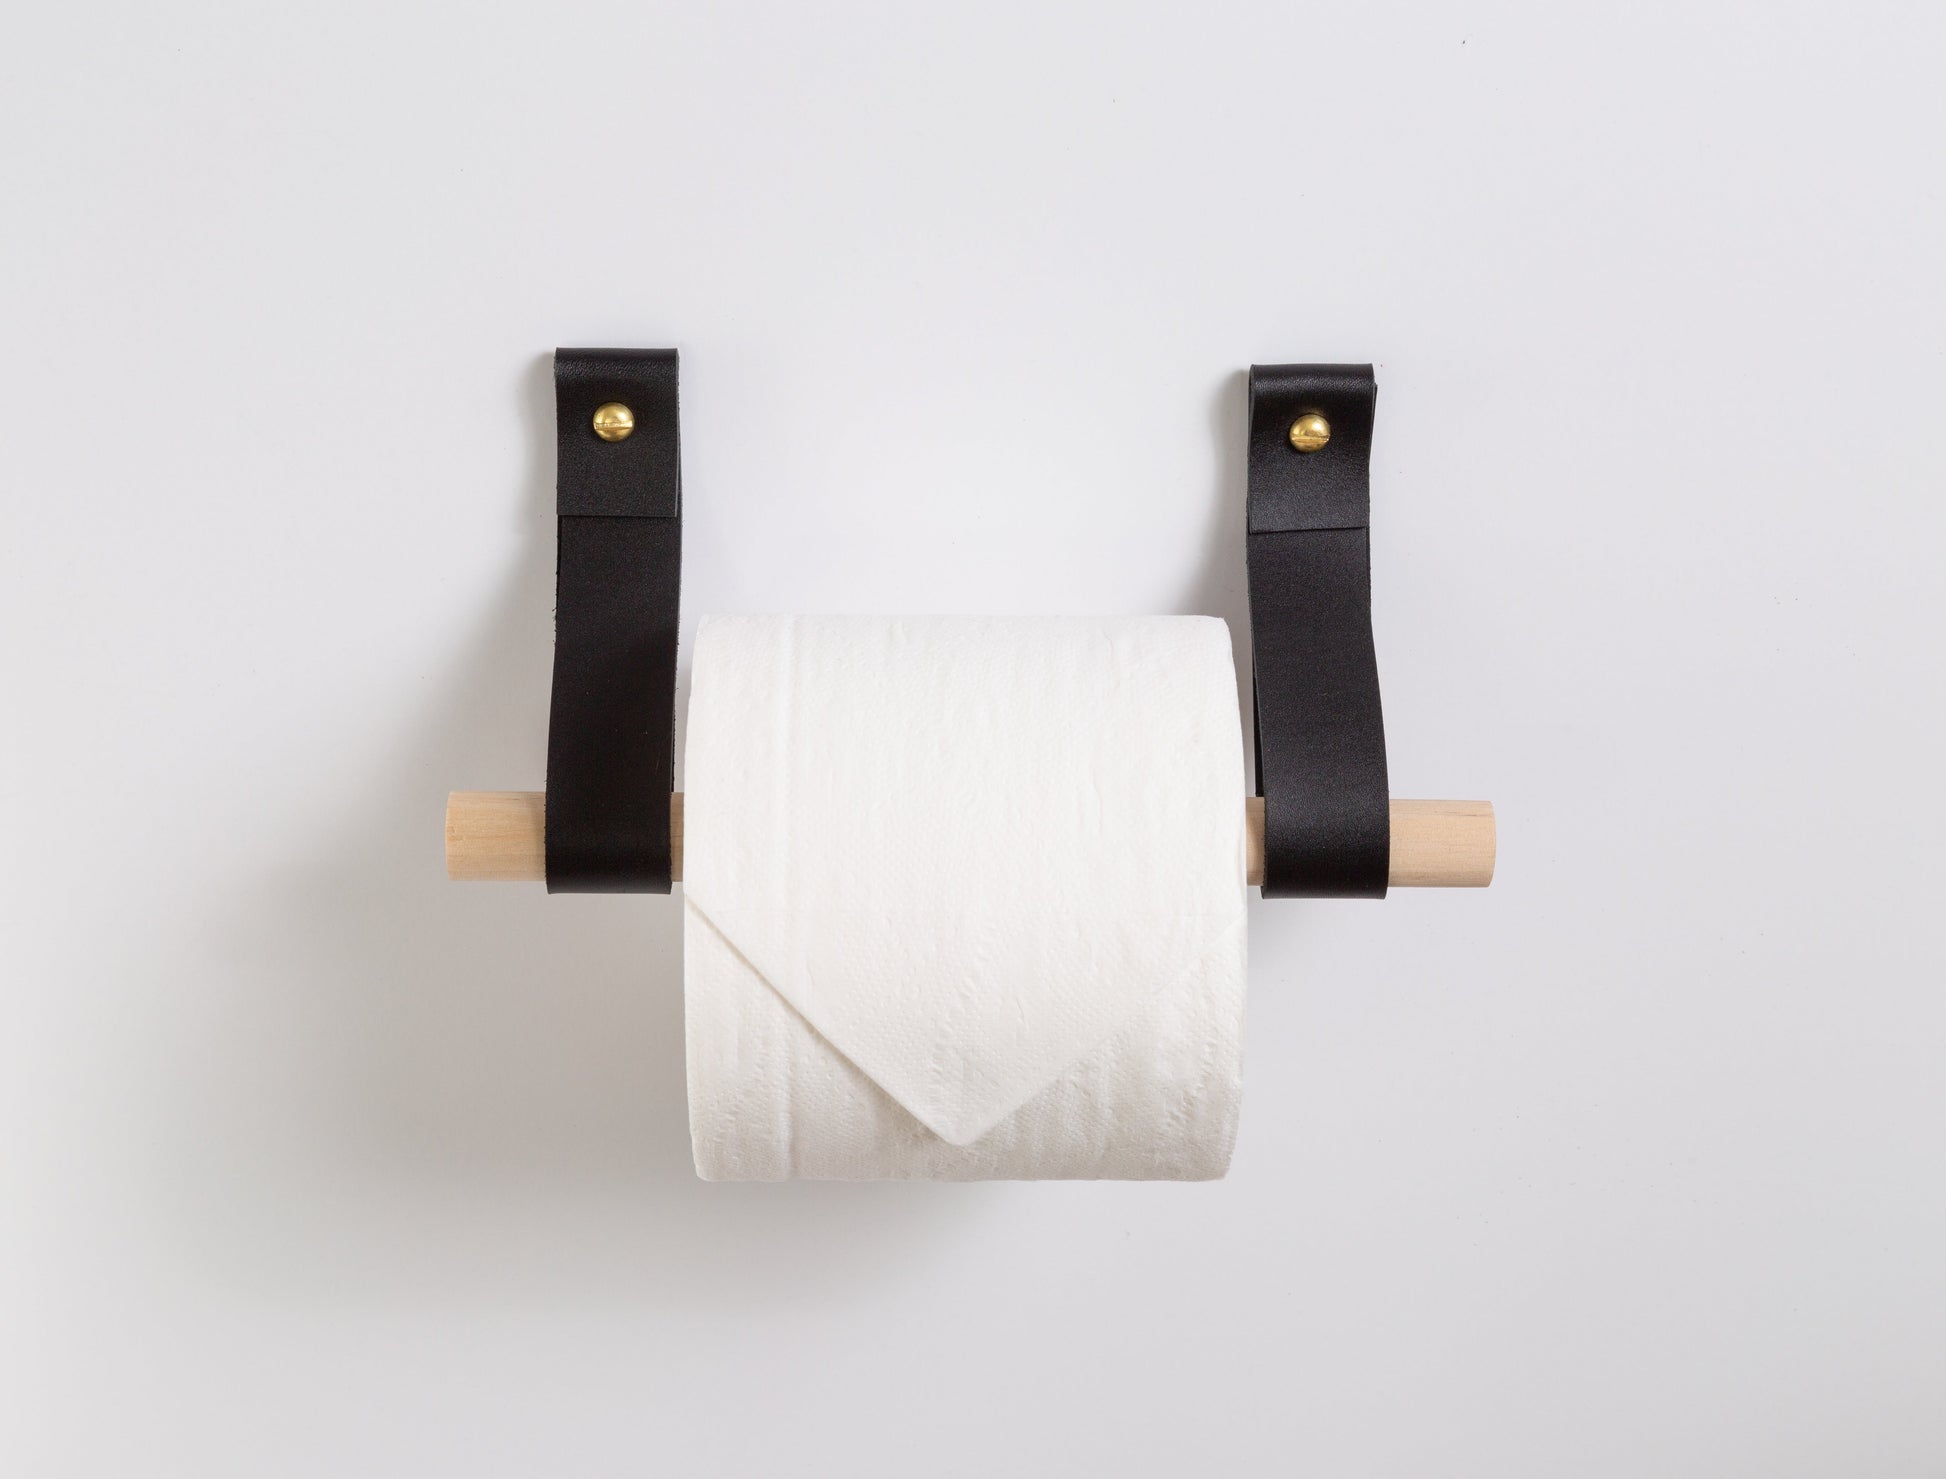  KES Black Toilet Paper Holder, Bathroom Tissue Holder